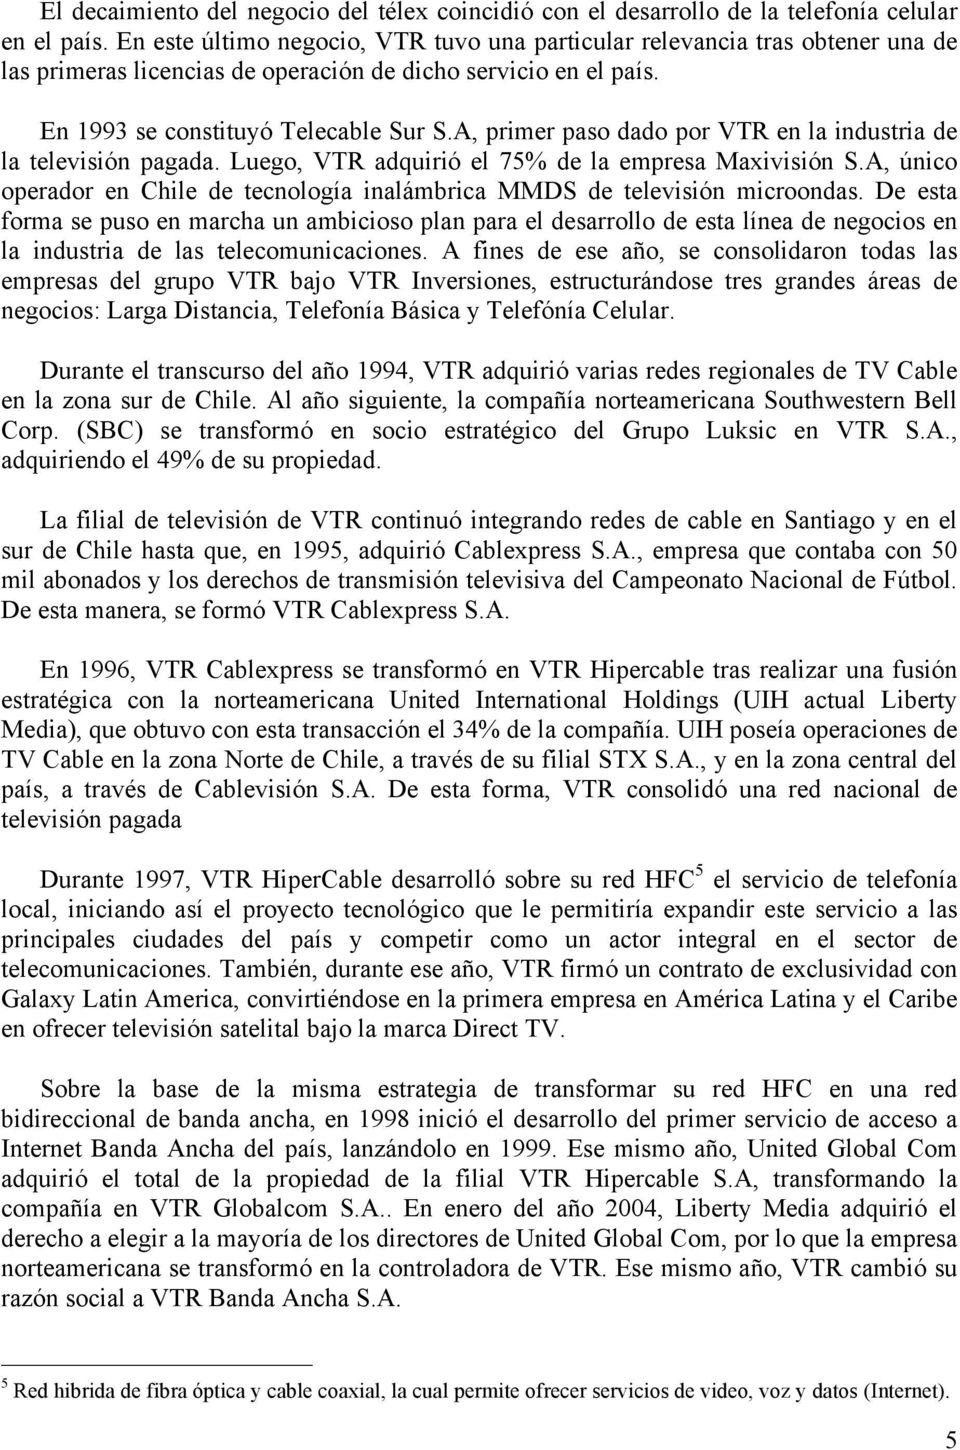 A, primer paso dado por VTR en la industria de la televisión pagada. Luego, VTR adquirió el 75% de la empresa Maxivisión S.